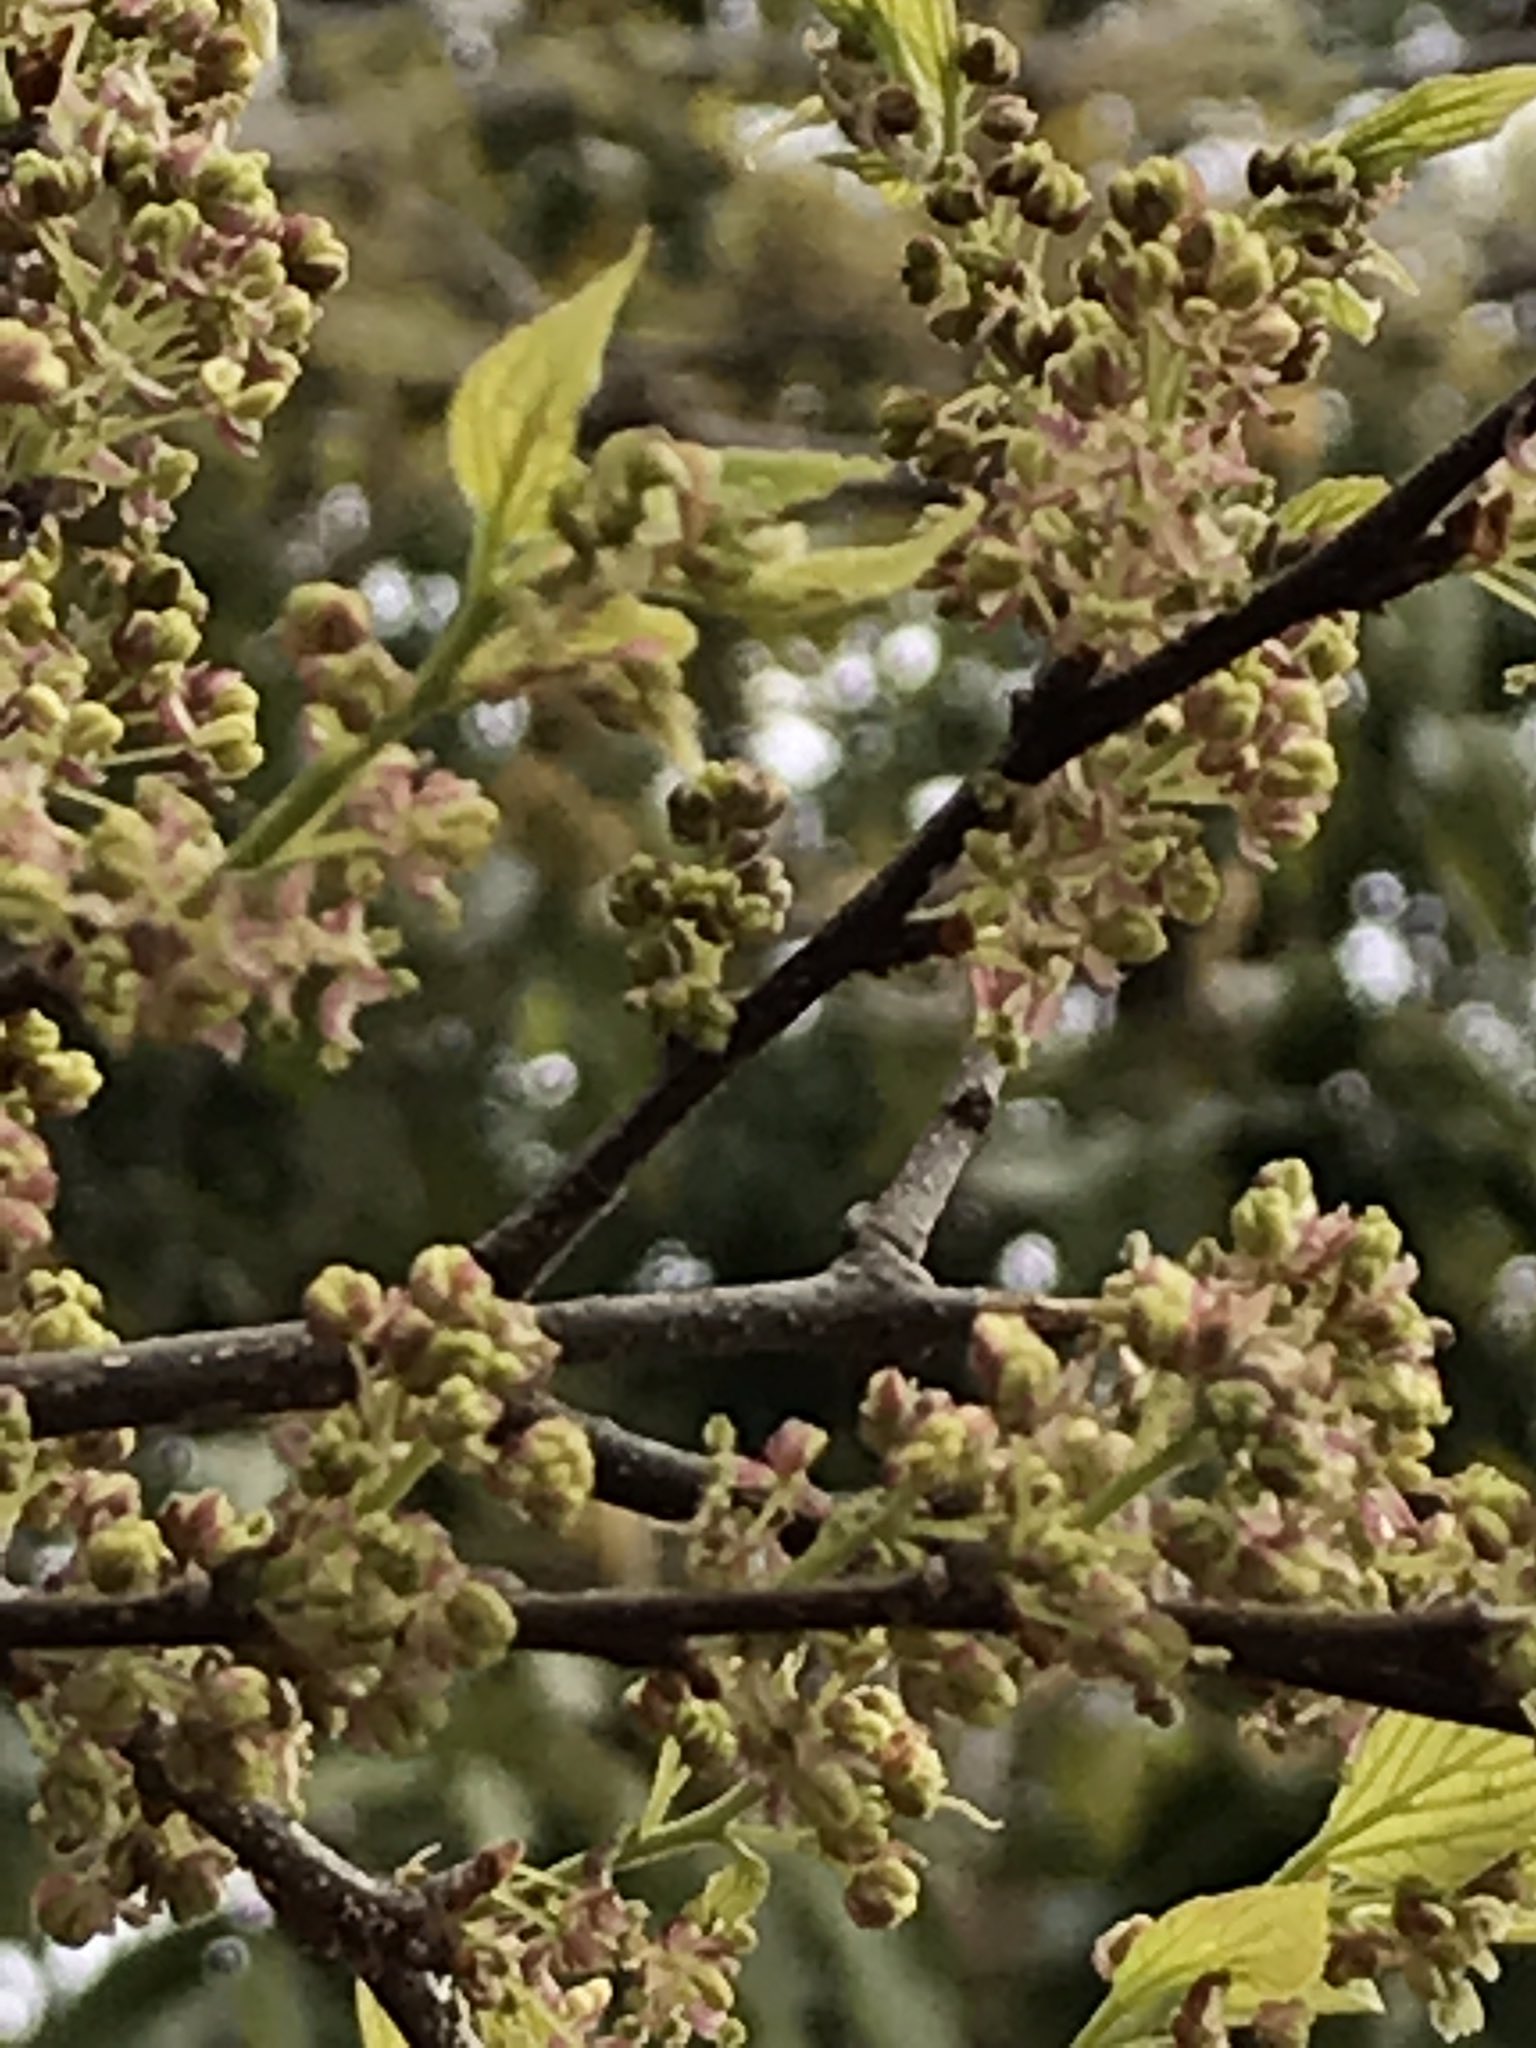 ヒメ エノキ 漢字では榎です 樹齢400年 メートルの大木になり 昔は旅人に木陰を提供しました 今でも鳥や小動物に生きる糧になる樹です さて 今は芽吹きです モコモコ見えるのは 葉でなく花 凄い数です 地味だから見逃されます T